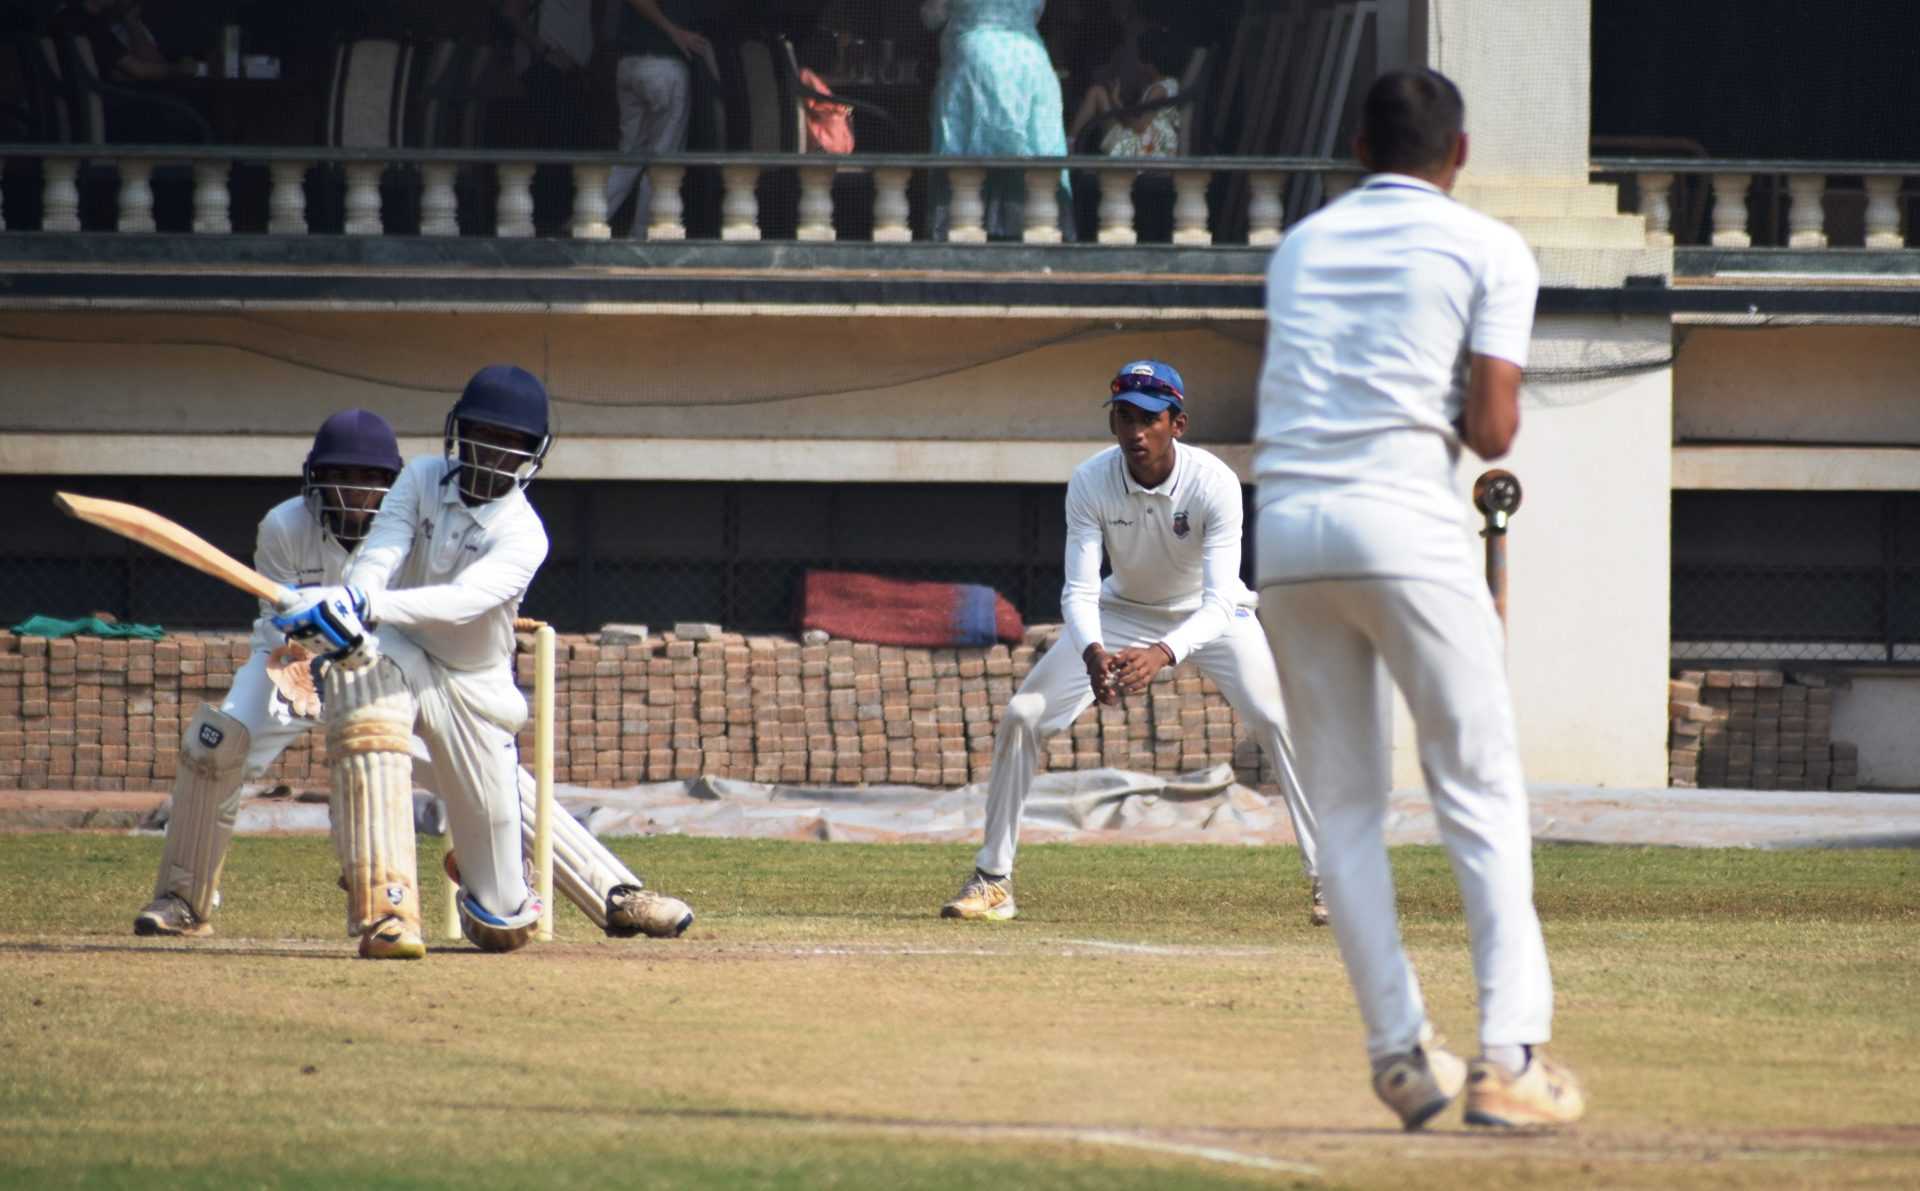 चौथ्या पीवायसी गोल्डफिल्ड राजू भालेकर स्मृती करंडक निमंत्रित 19 वर्षाखालील गटाच्या तीन दिवसीय क्रिकेट स्पर्धेत क्लब ऑफ महाराष्ट्र, व्हेरॉक वेंगसरकर क्रिकेट अकादमी संघांचा उपांत्य फेरीत प्रवेश